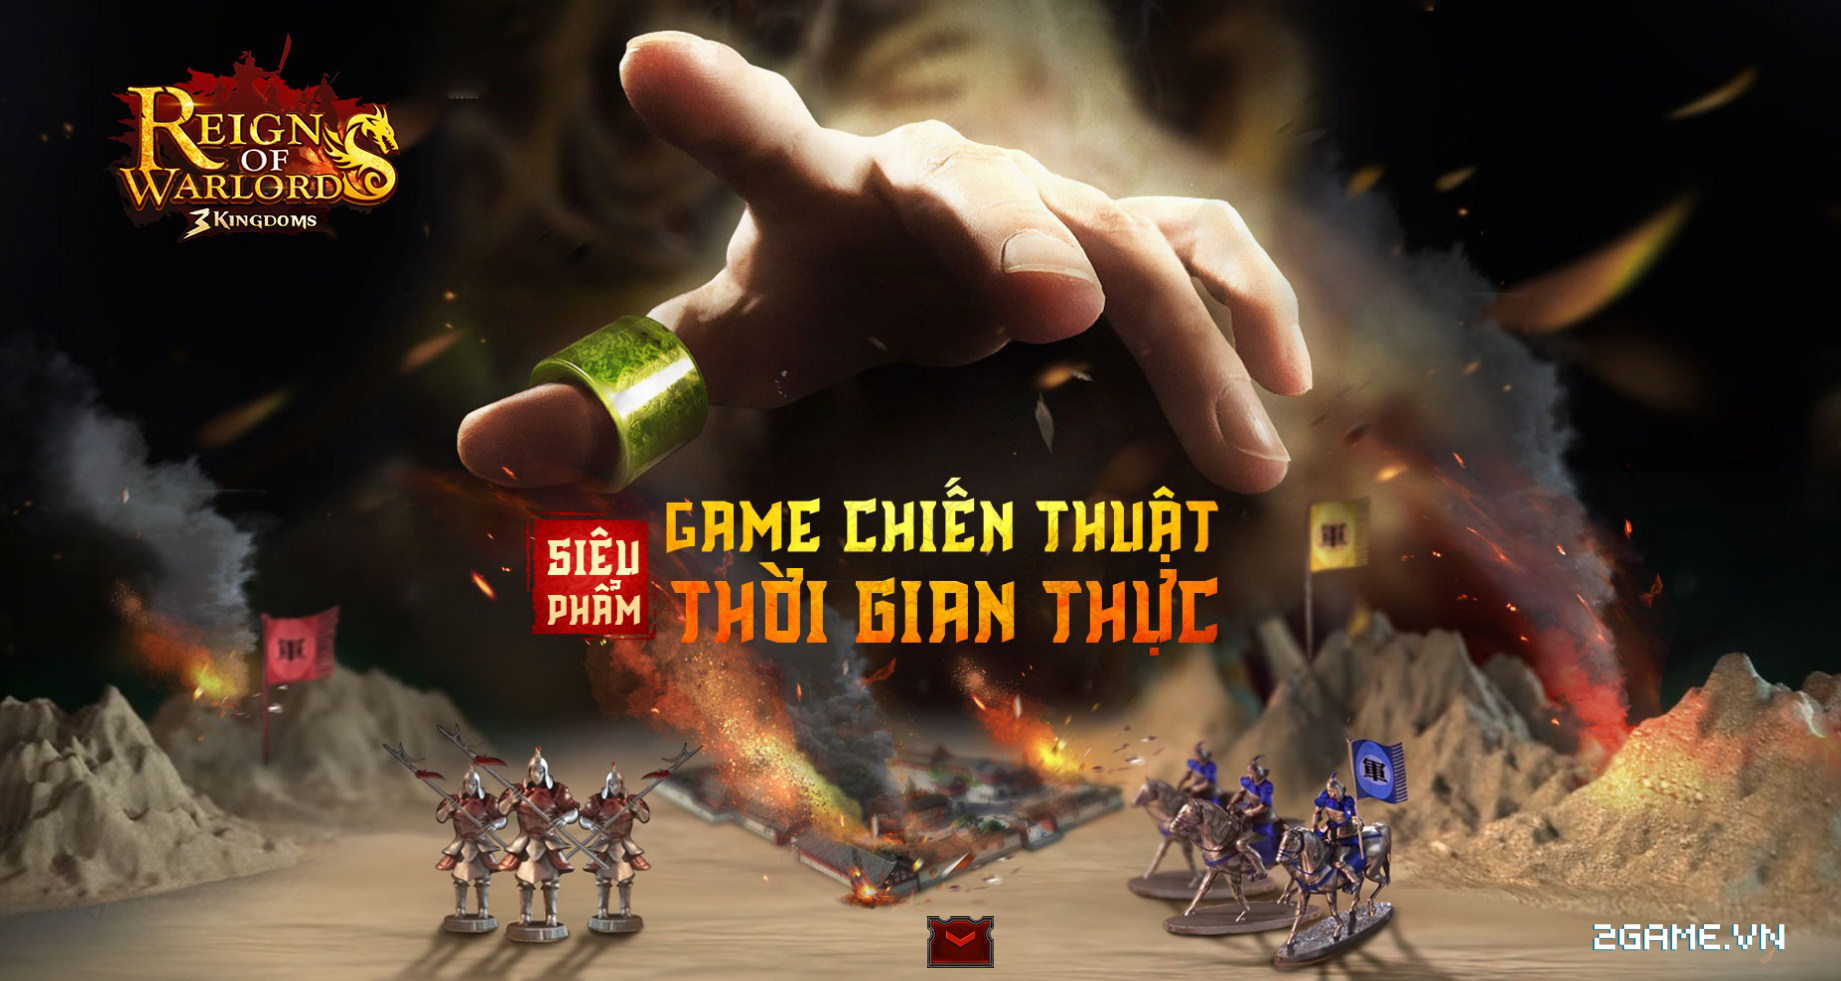 Game chiến thuật Reign Of Warlords hé lộ những hình ảnh Việt hóa đầu tiên